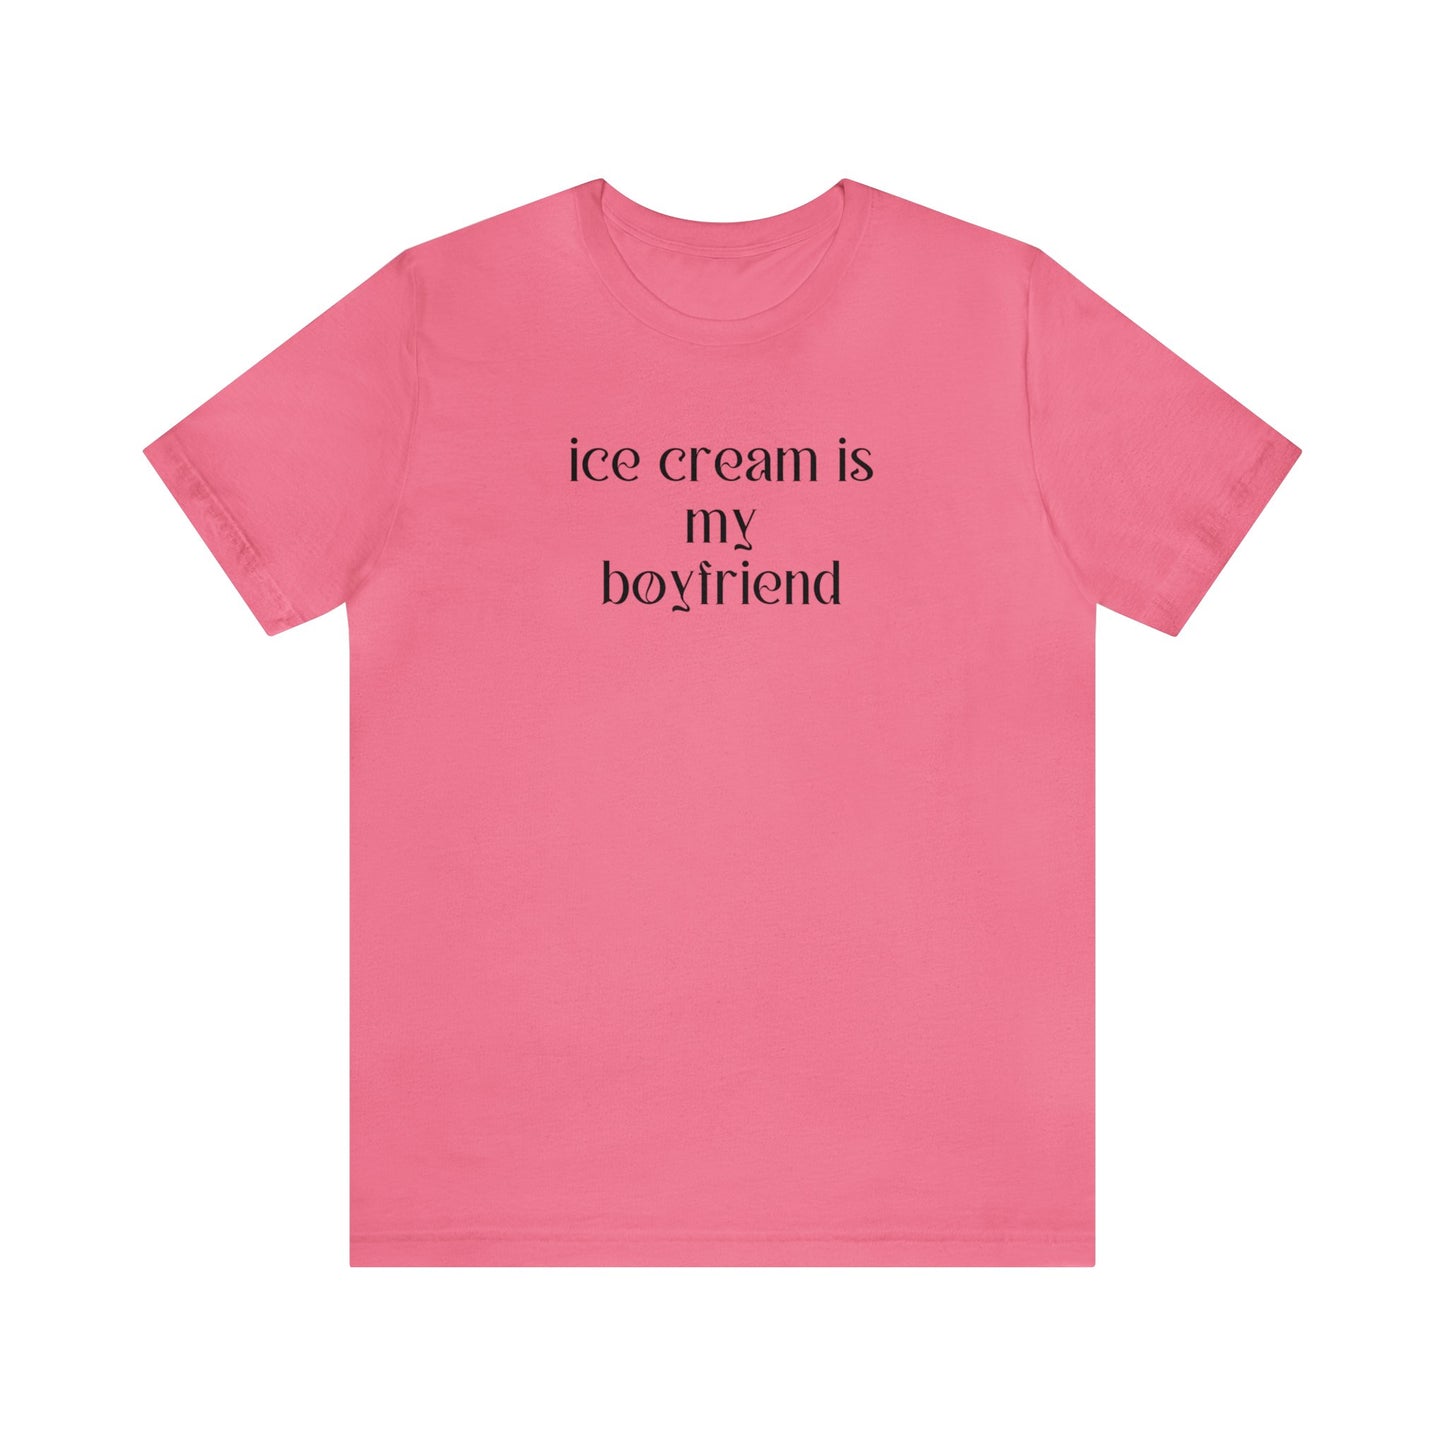 Ice Cream is my boyfriend - Unisex T-shirt